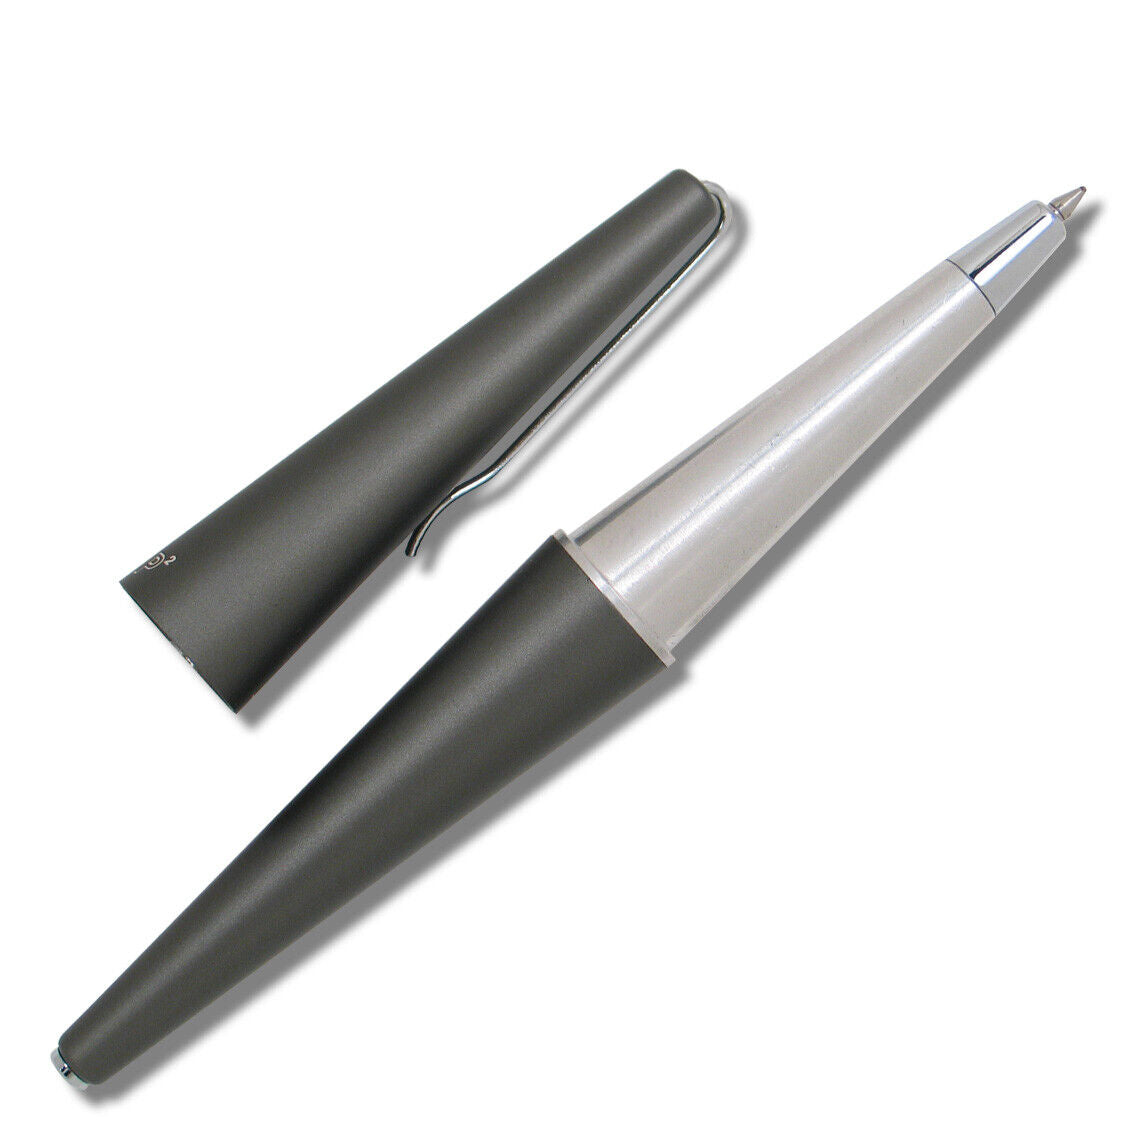 ACME P2-U Rollerball Desk Pen